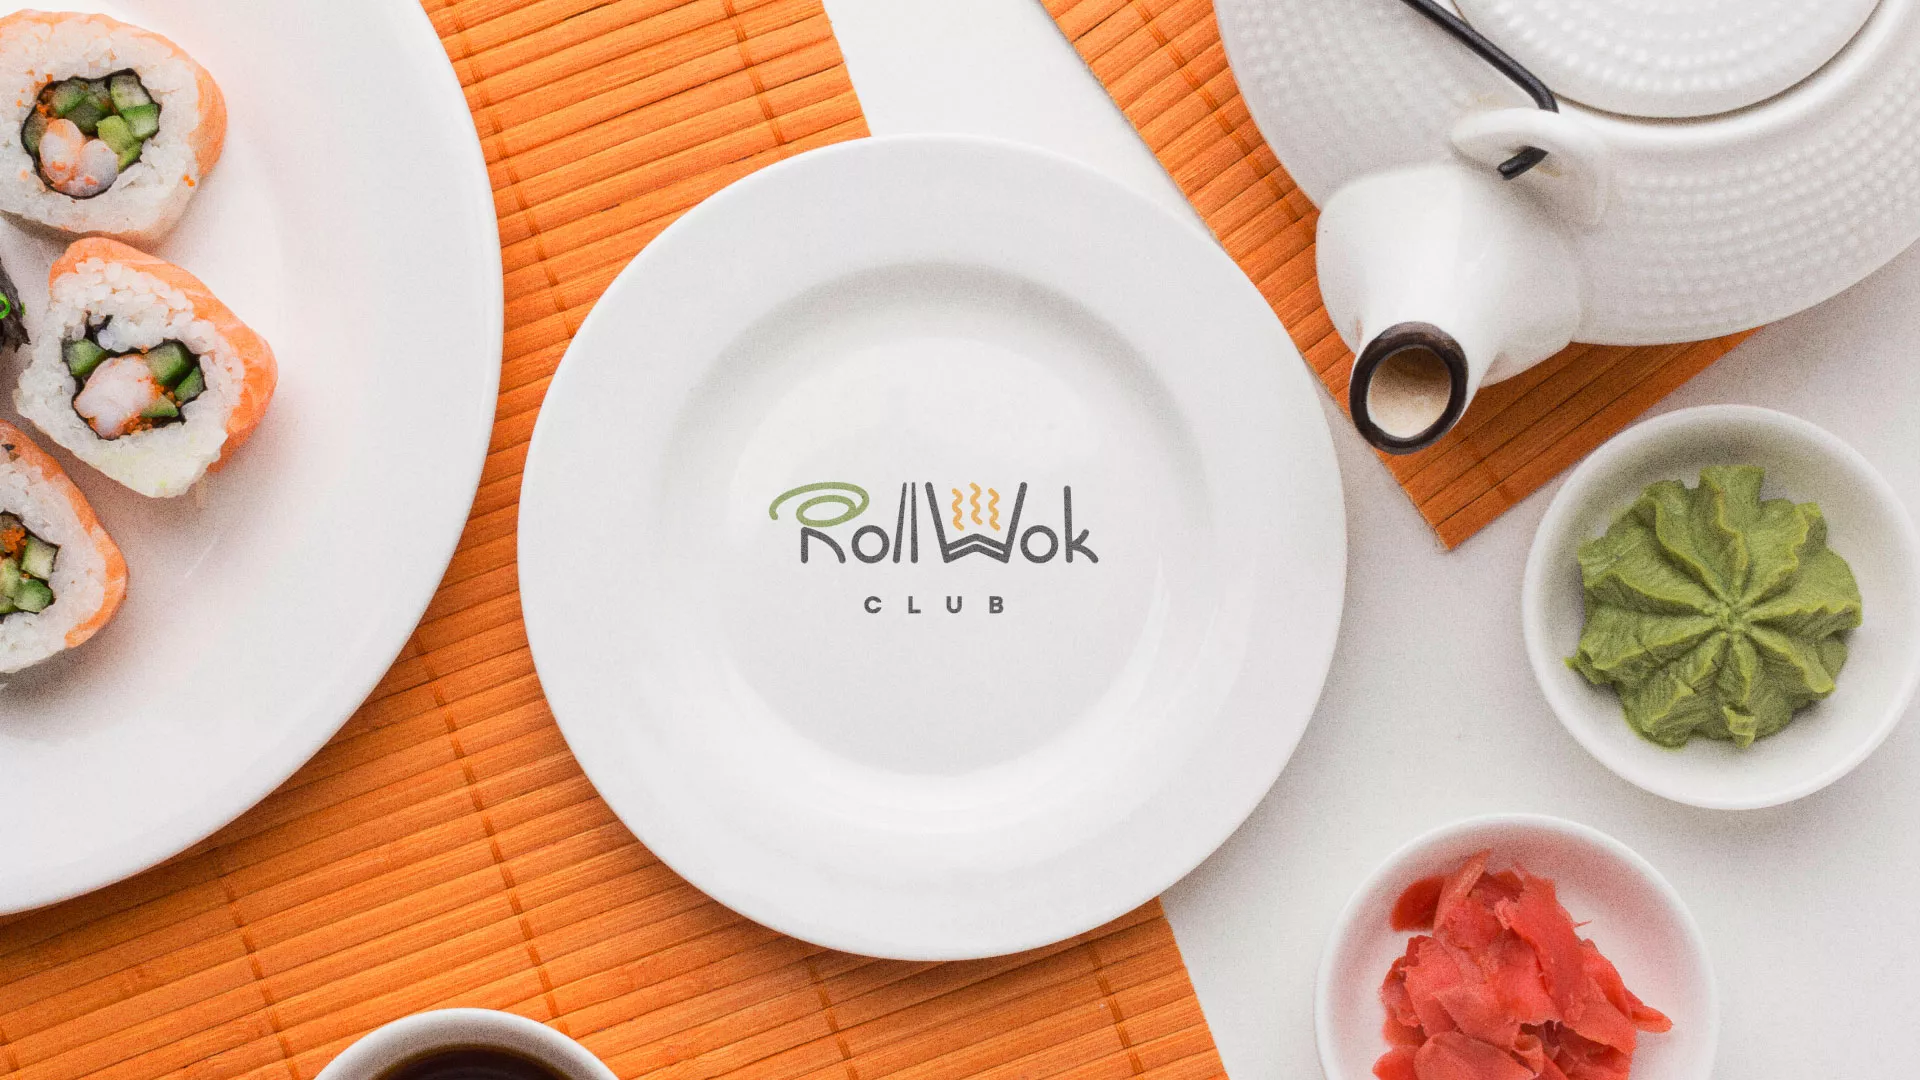 Разработка логотипа и фирменного стиля суши-бара «Roll Wok Club» в Камне-на-Оби